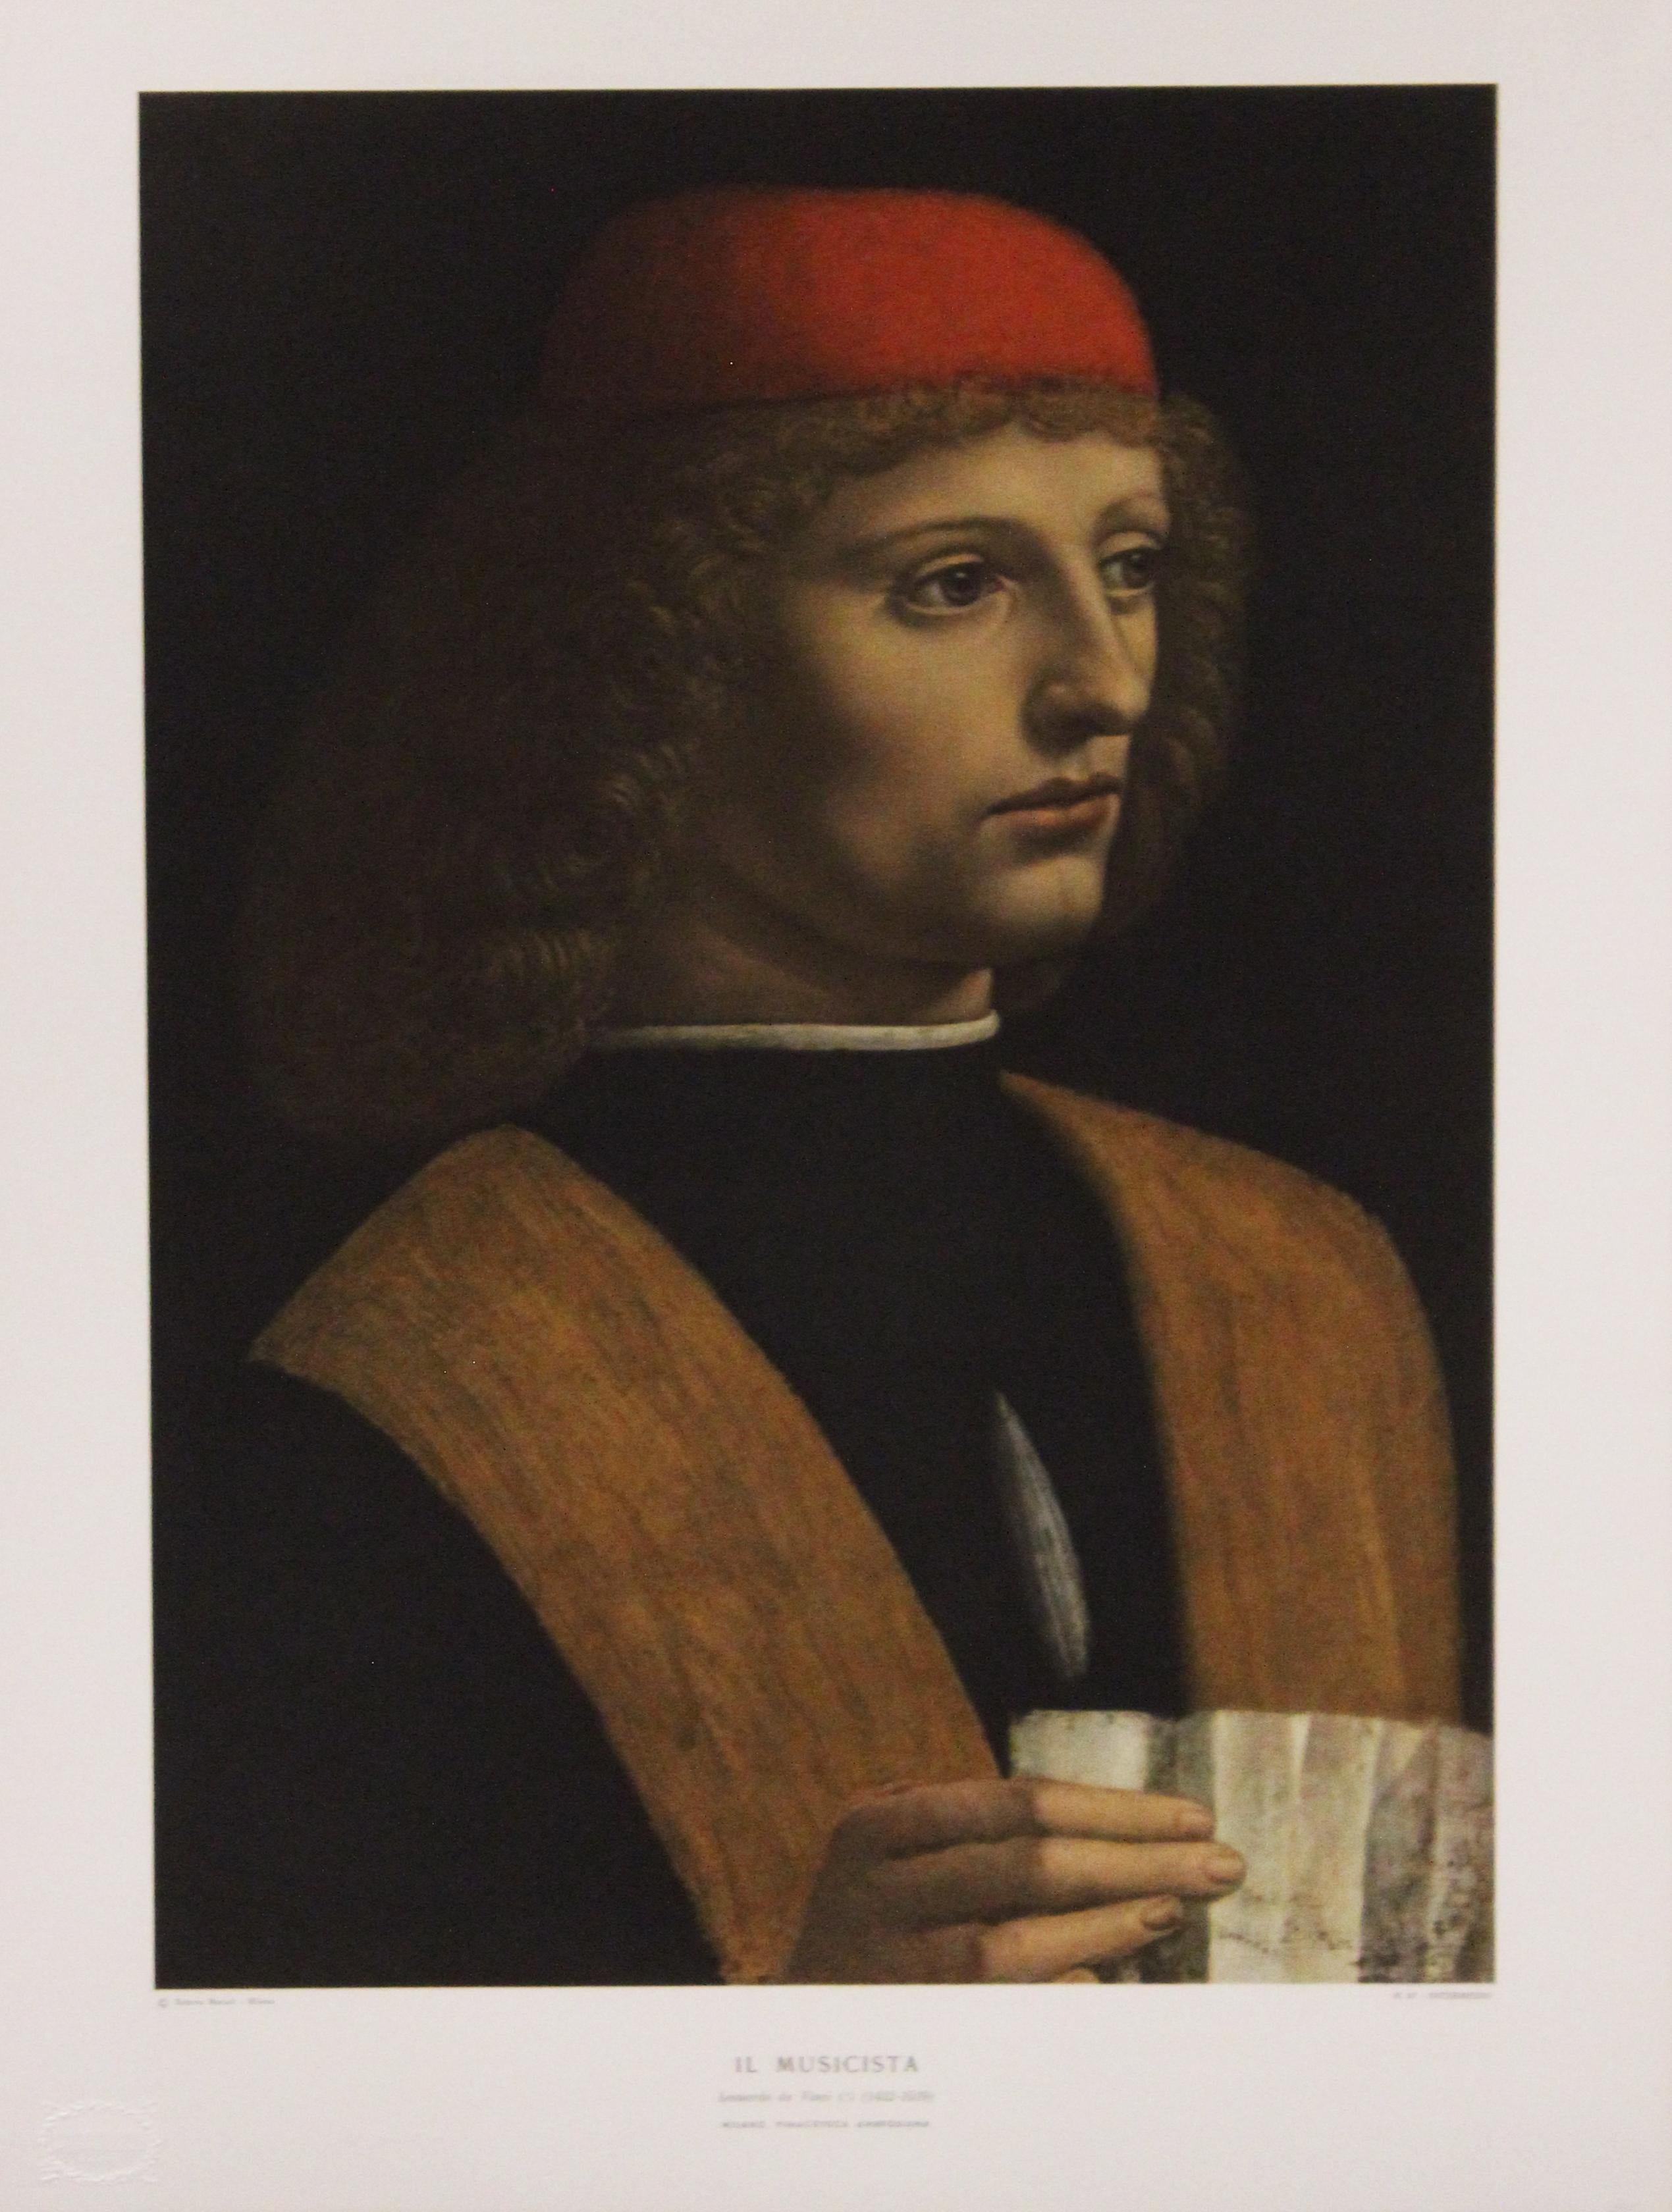 Leonardo da Vinci Portrait Print - Il Musicista-Poster. Printed in Italy by Roberto Hoesch, Milano.